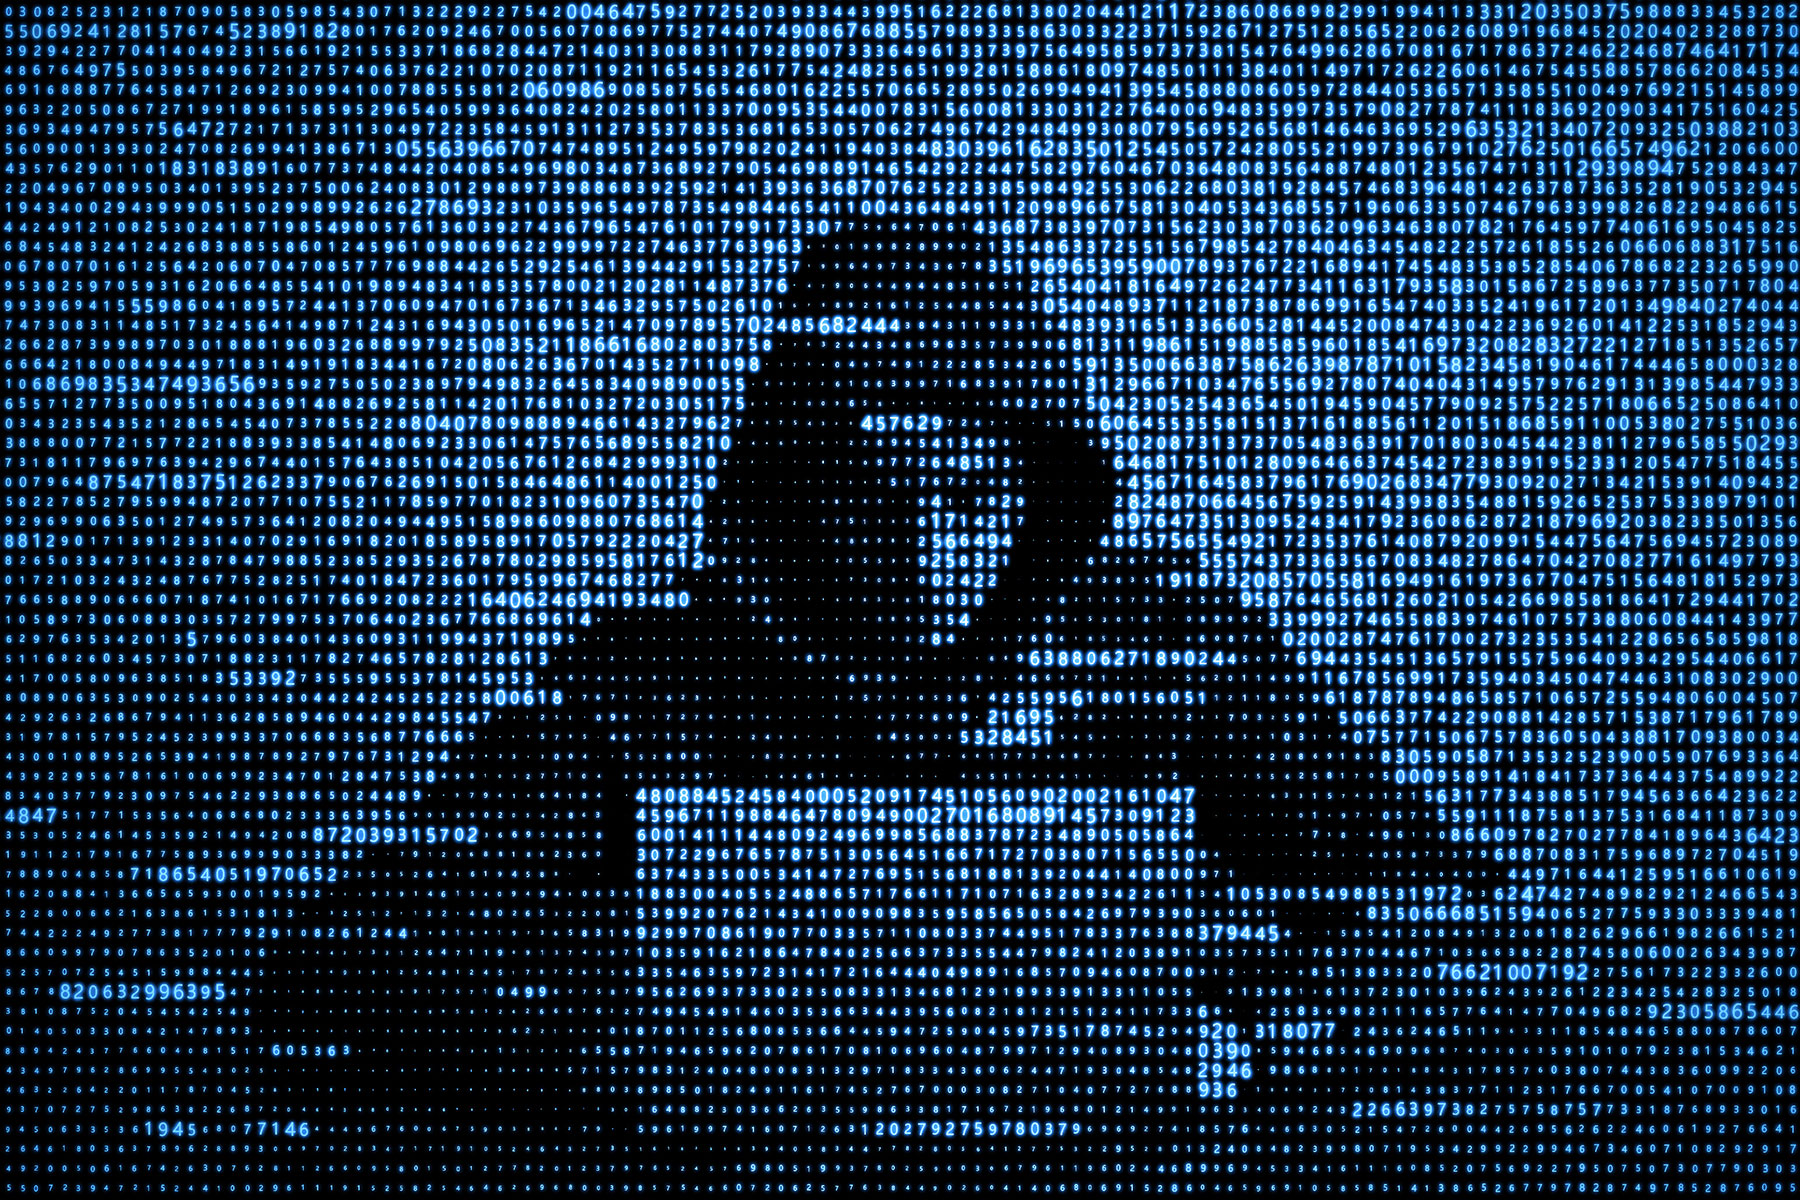 Kybernetická bezpečnost ve firmách. Tři pilíře pro efektivní ochranu před kyberútoky